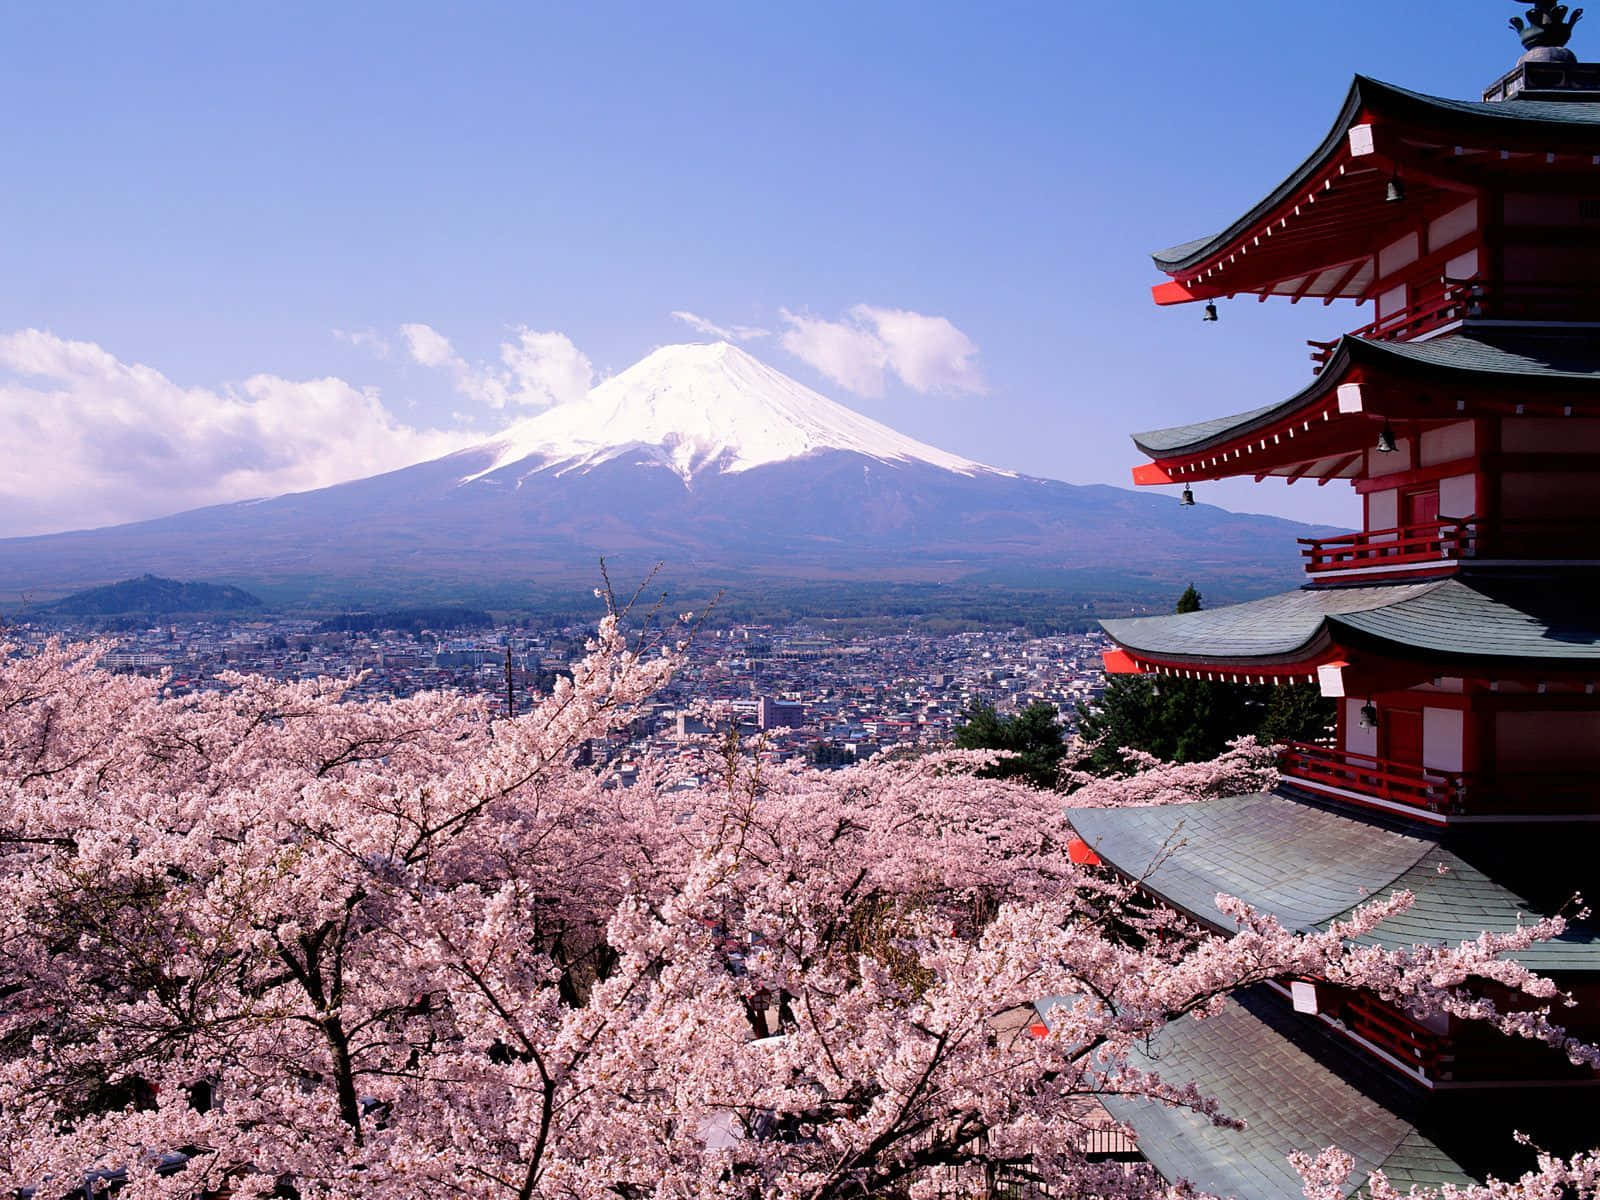 Fondode Pantalla De Primavera Con La Pagoda Fuji Y Las Flores De Cerezo.